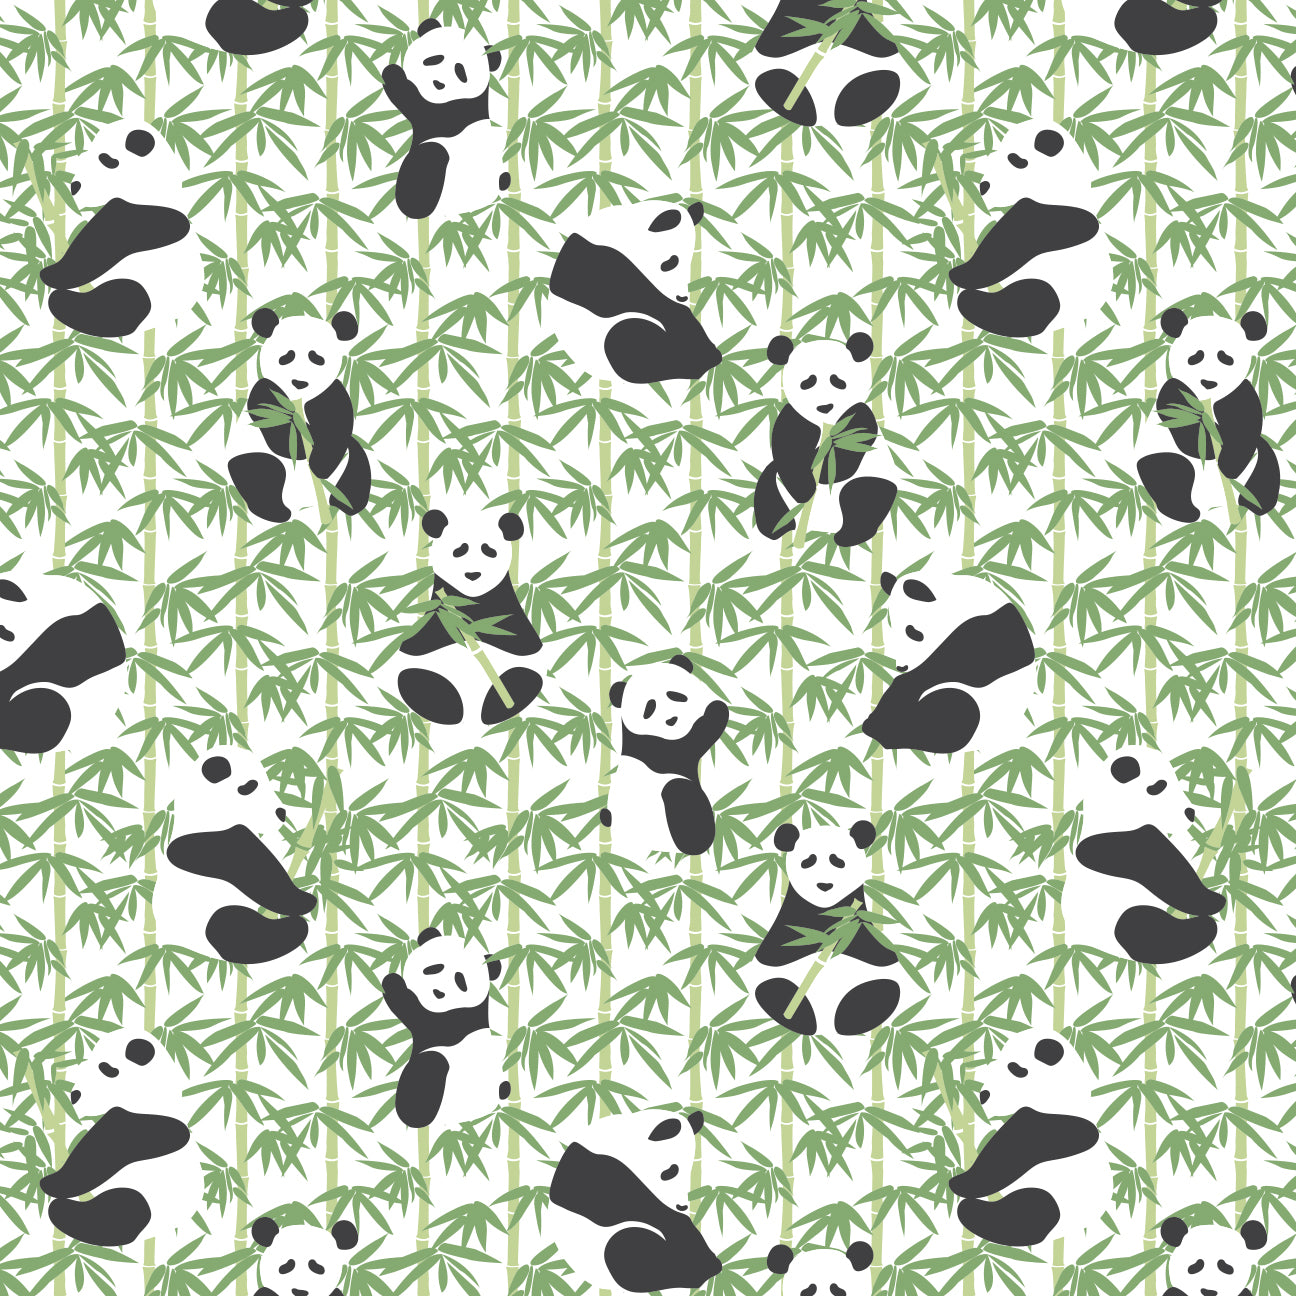 Women's Stockholm Dress - Pandas Green